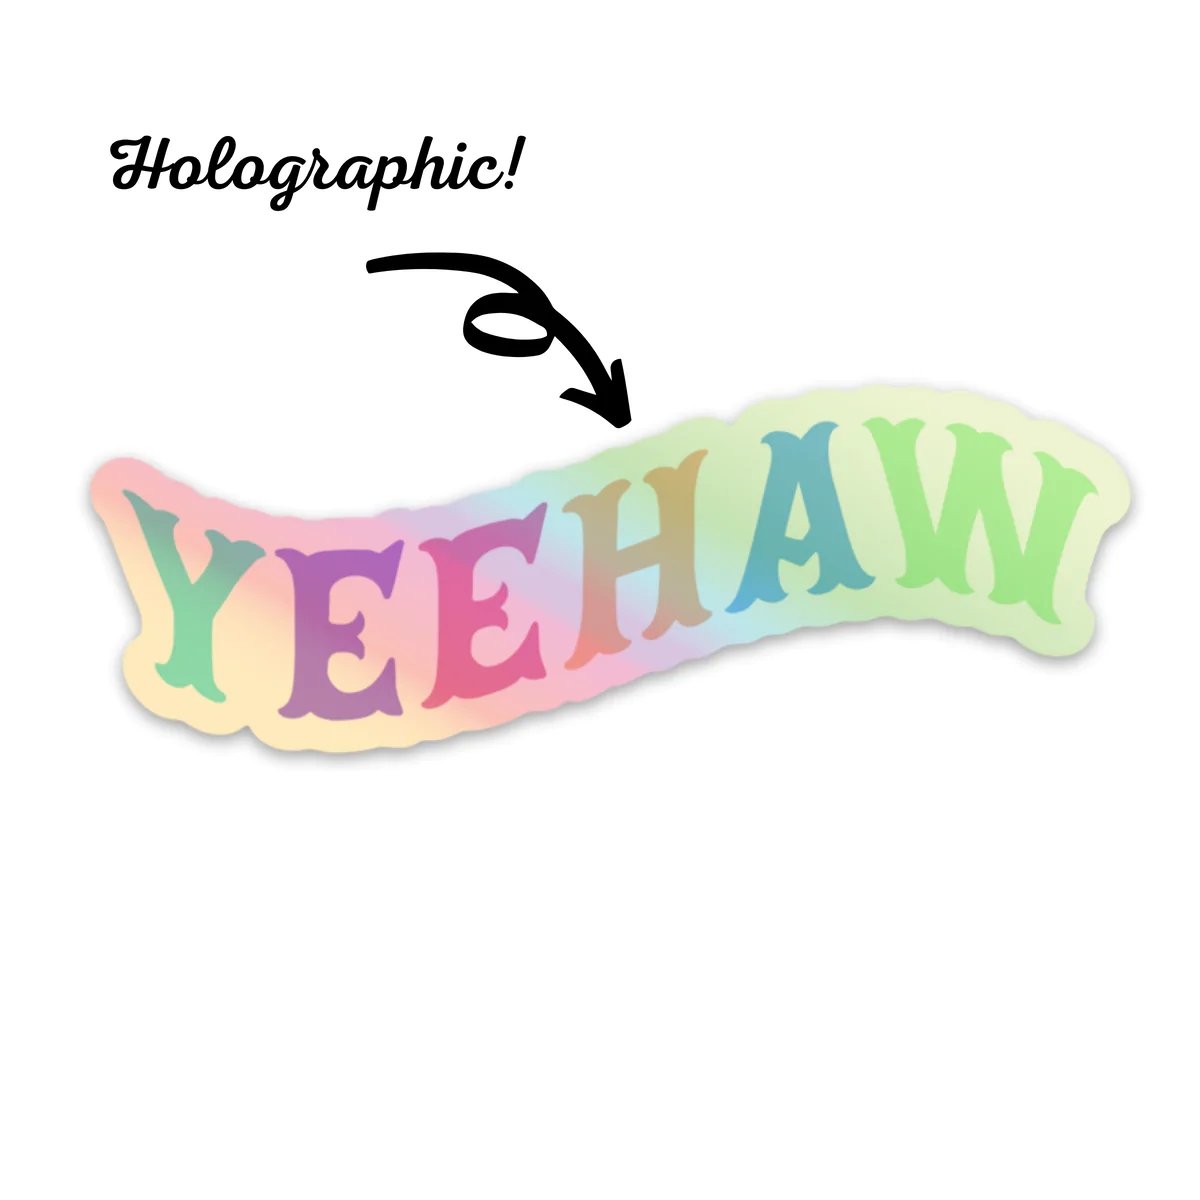 Yeehaw Holographic Vinyl Sticker